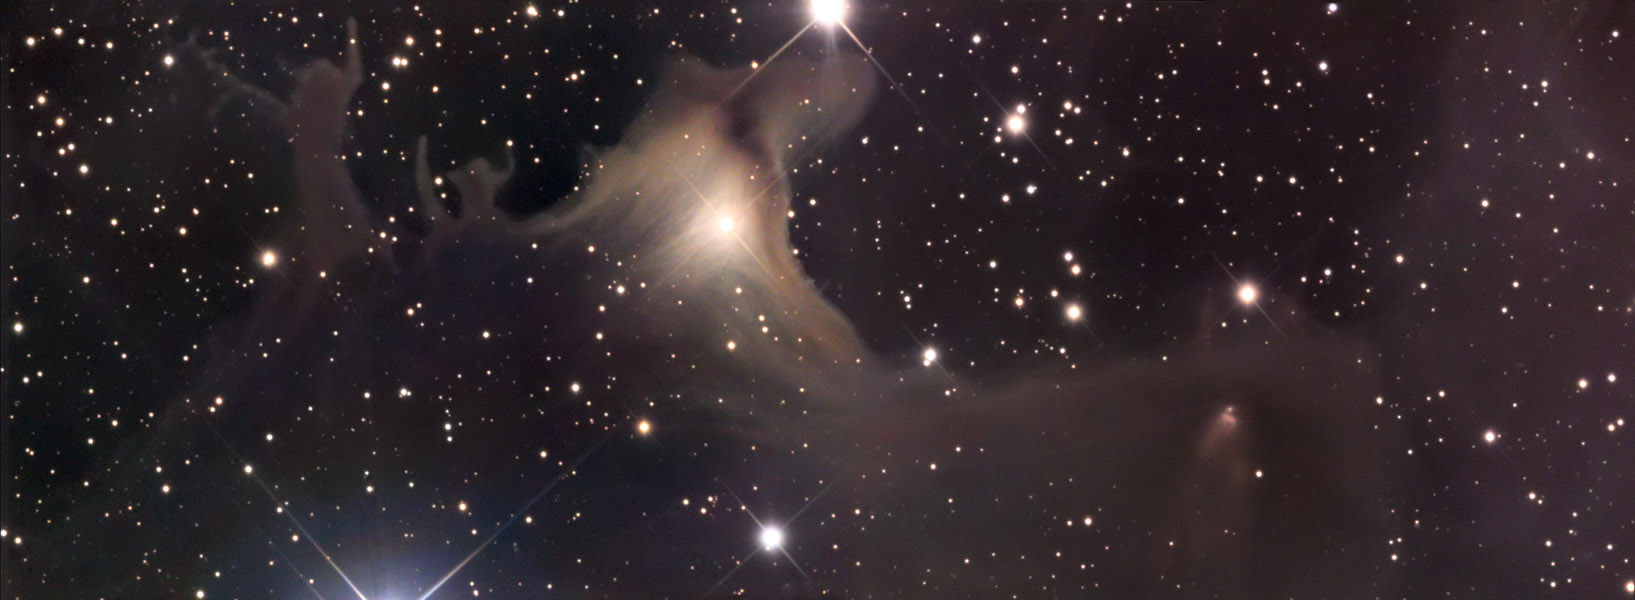 SH2 136: A Spooky Nebula